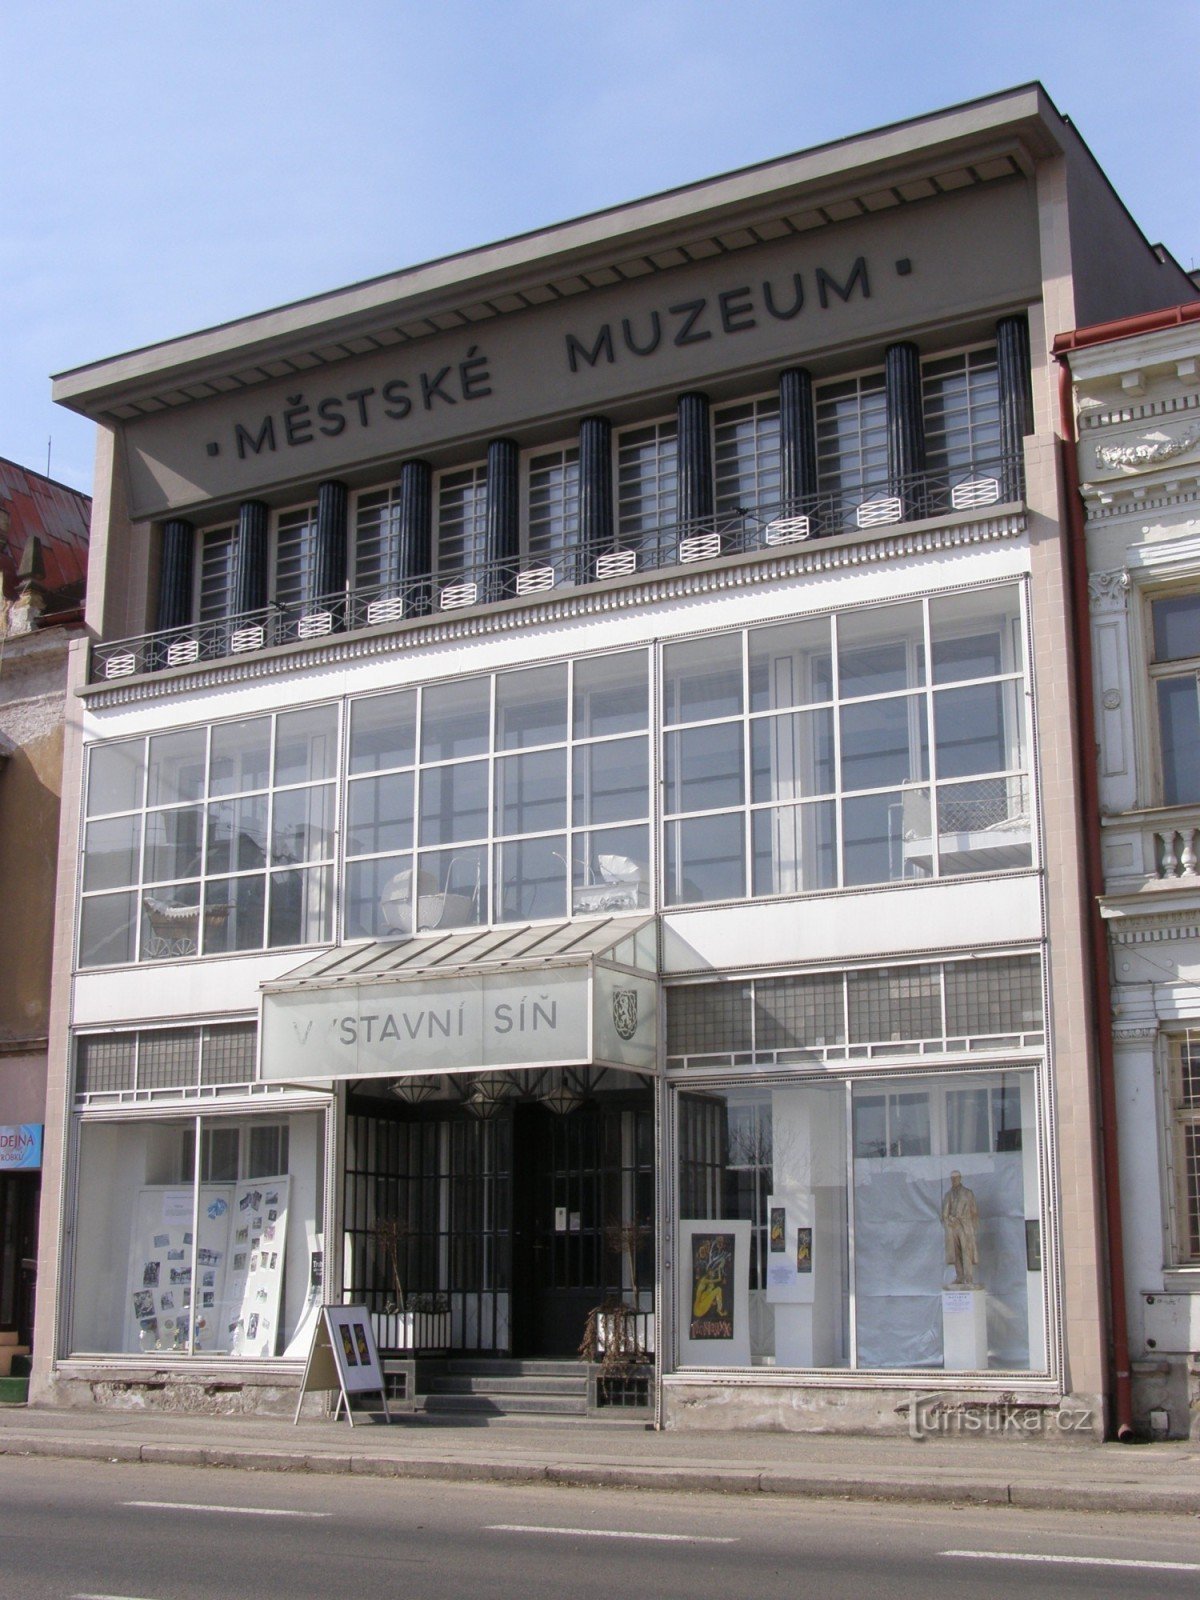 Jaroměř - Stadsmuseet - Wenkes hus